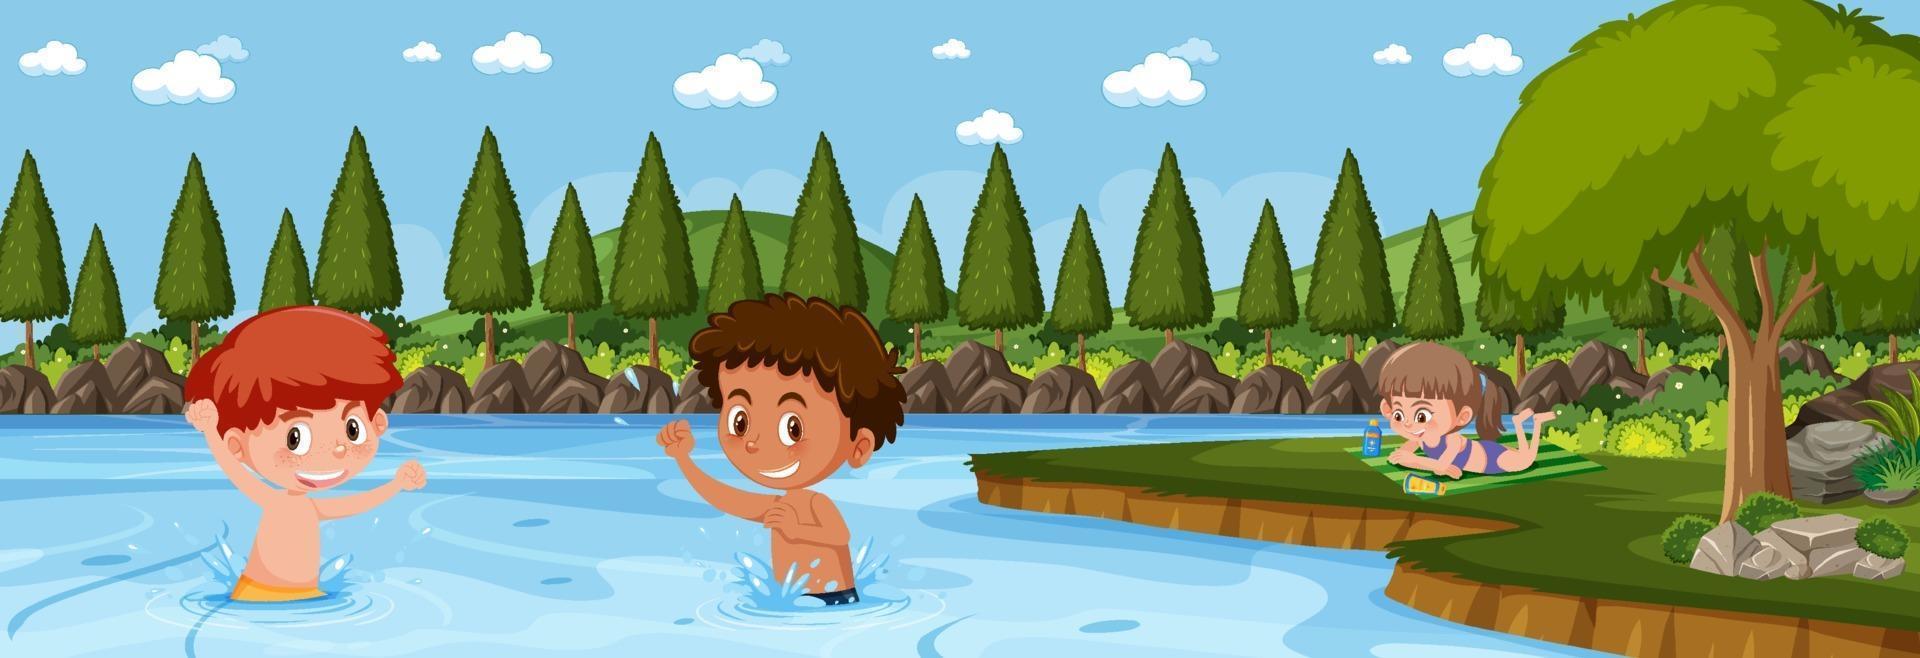 scena paesaggistica panoramica con molti bambini che nuotano nel lago vettore